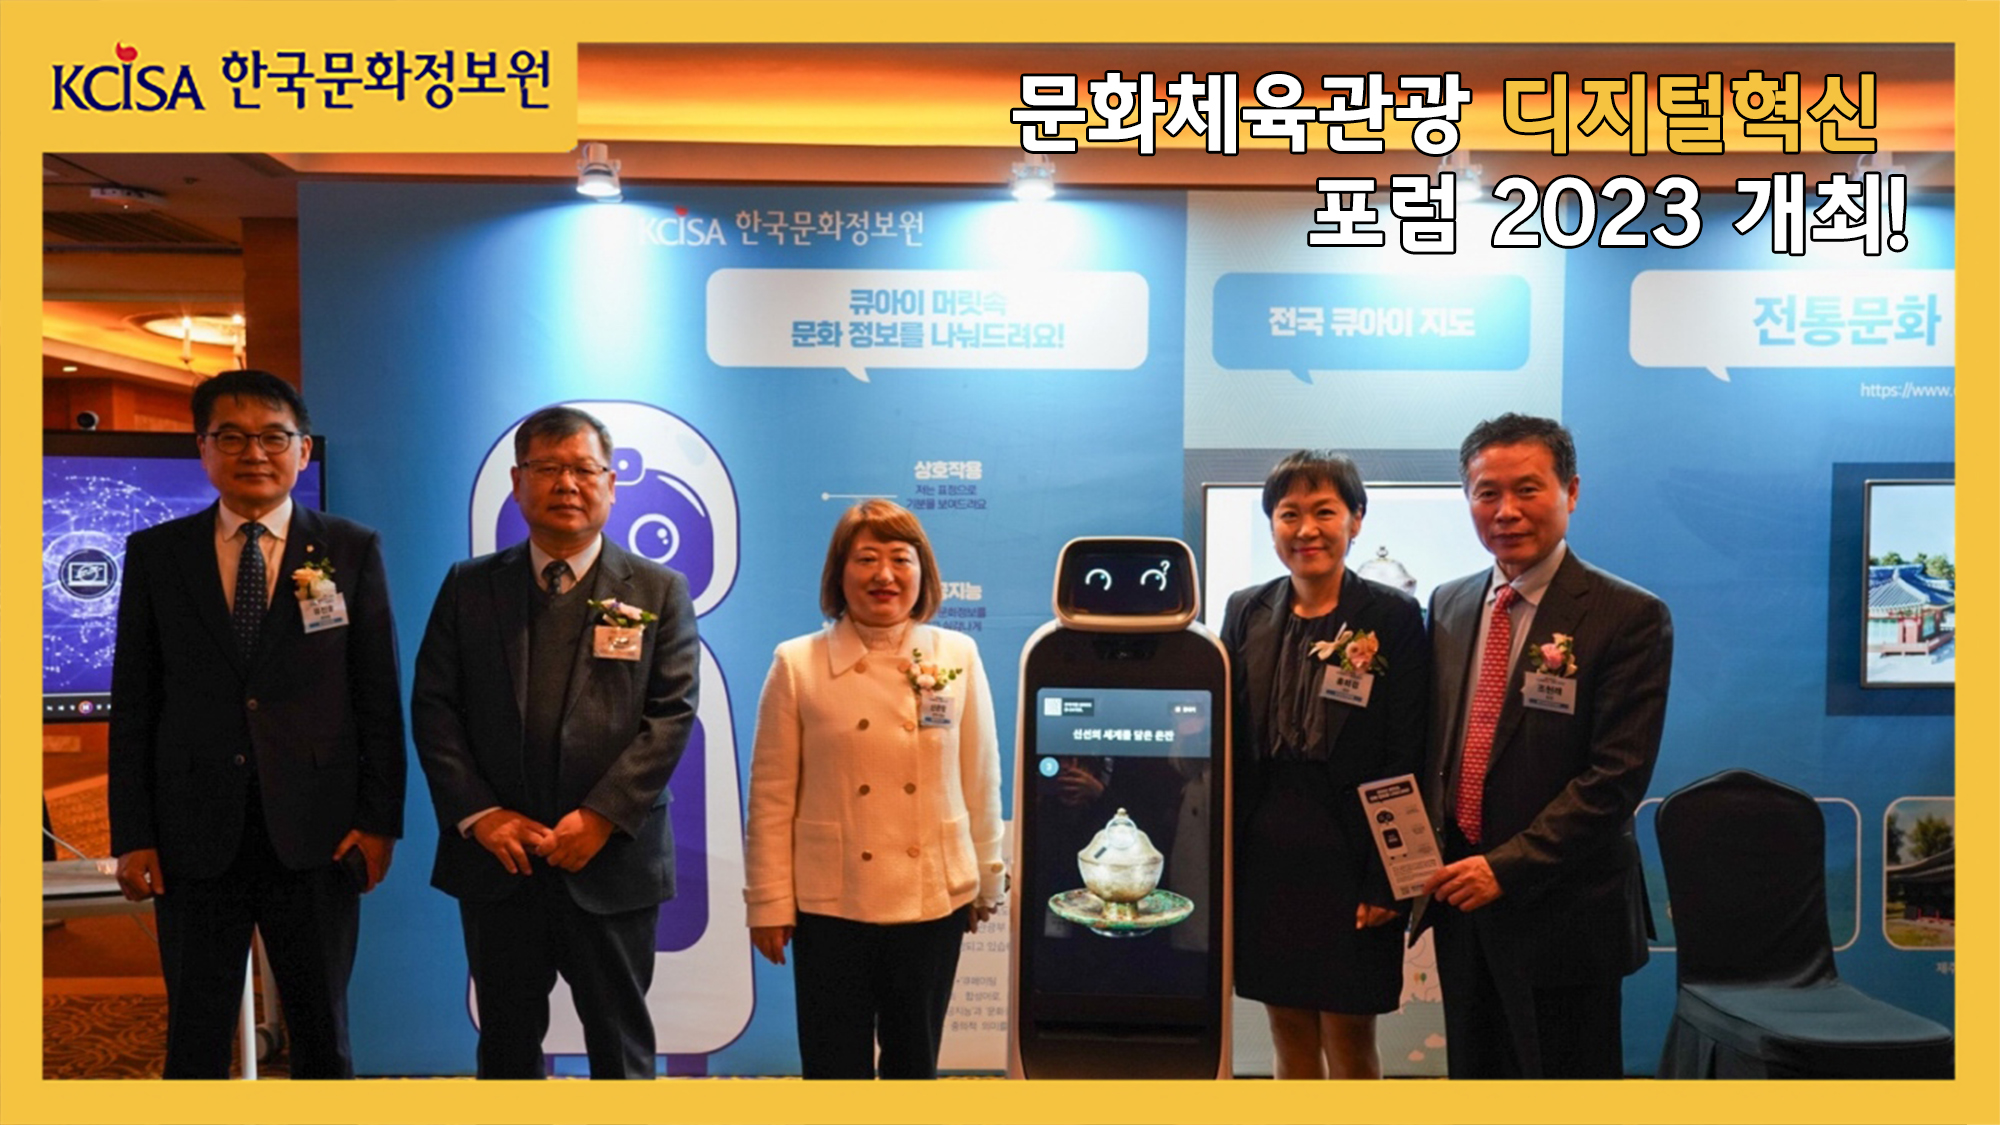 문화체육관광 디지털혁신 포럼 2023 개최!